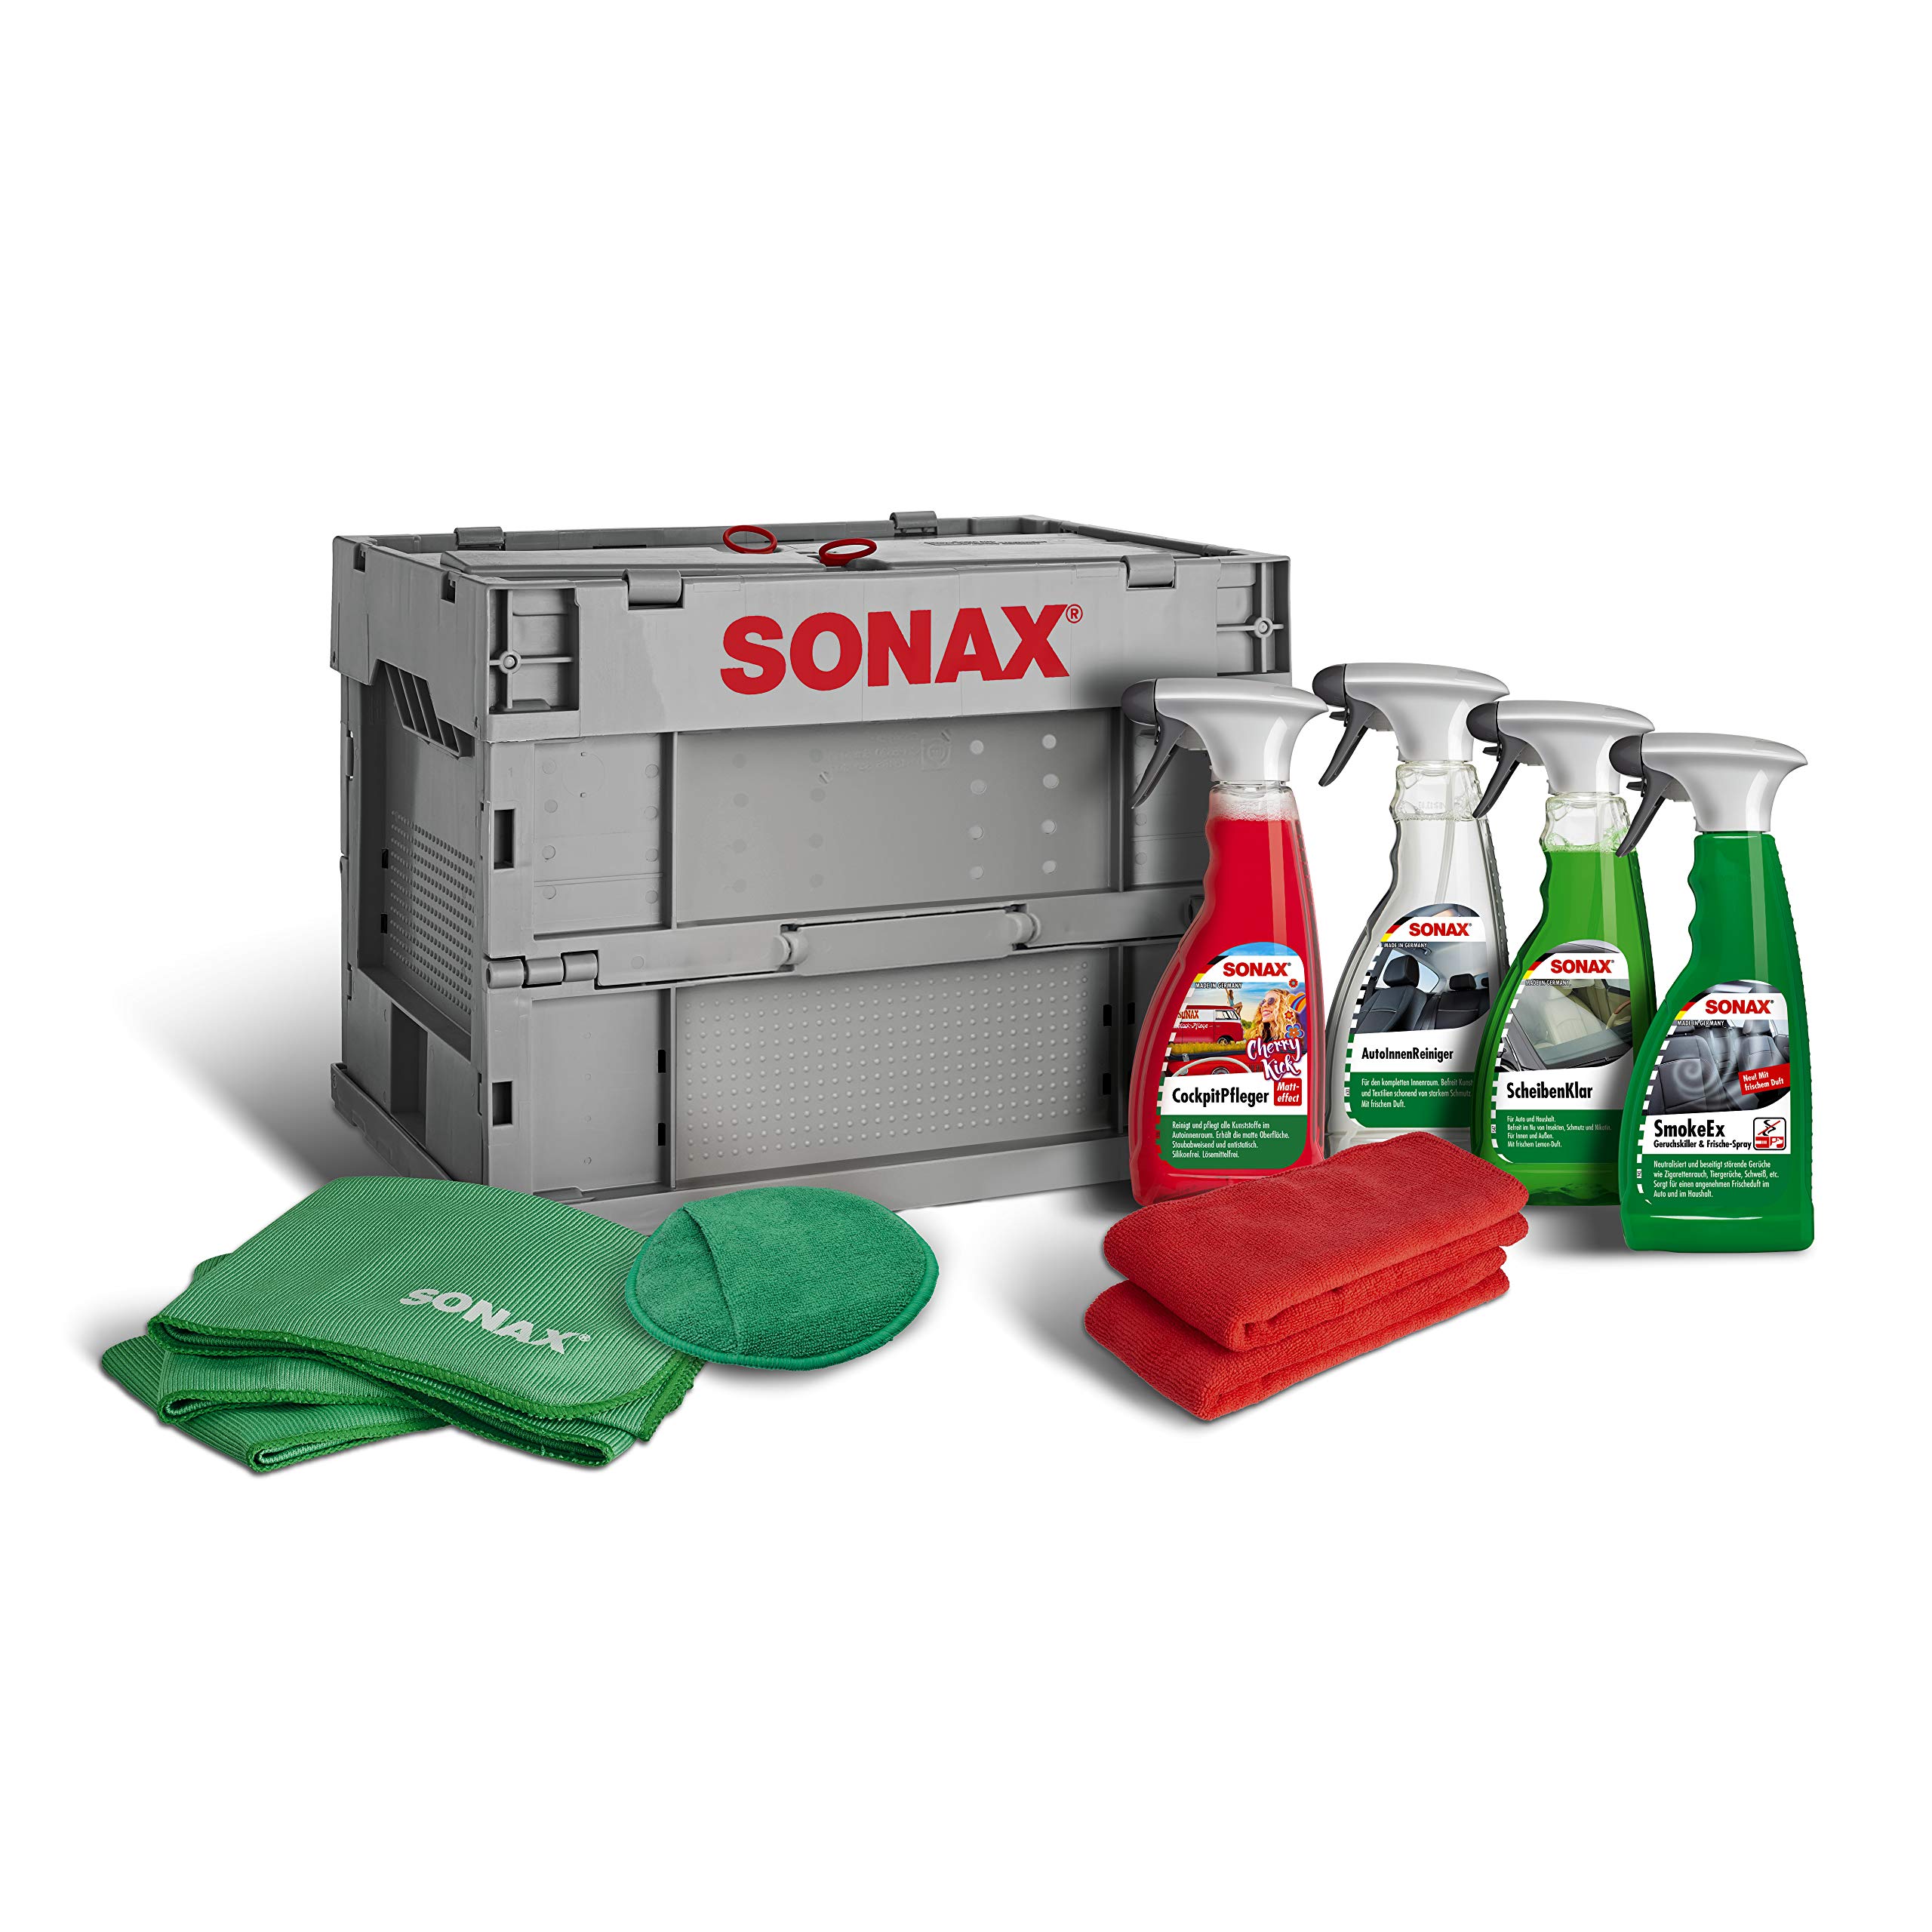 SONAX TruckerBox-Paket: Innenraumpflegebox (7-teilig) hochwertige Produkte + Zubehör für die Reinigung und Pflege im Innenraum, ideal für unterwegs | Art-Nr. 07685410